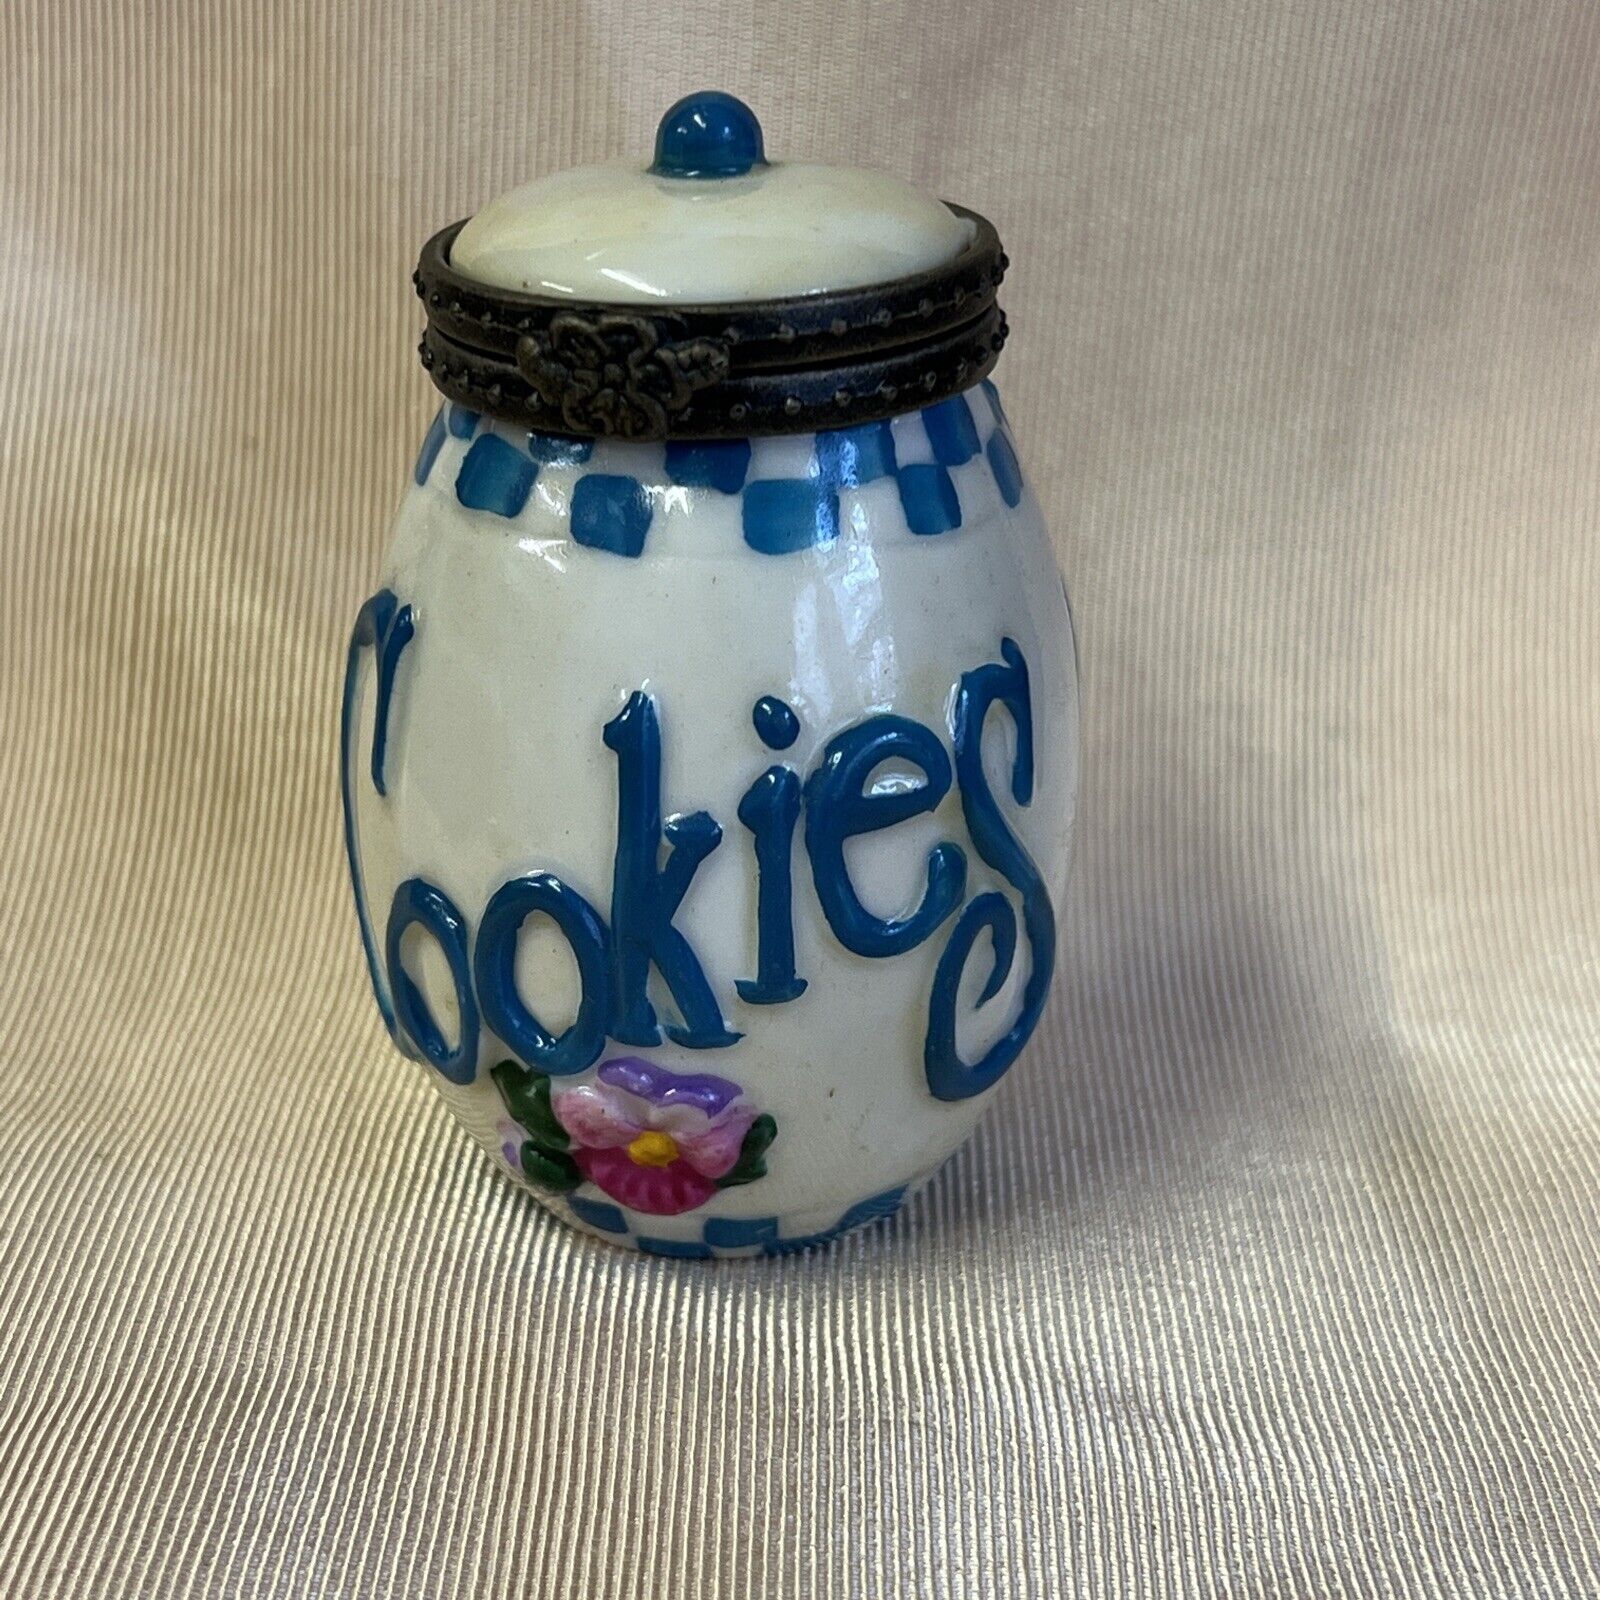 Vintage Cookie Jar Trinket Box Hinged Porcelain Lid Blue White Flower Cookies